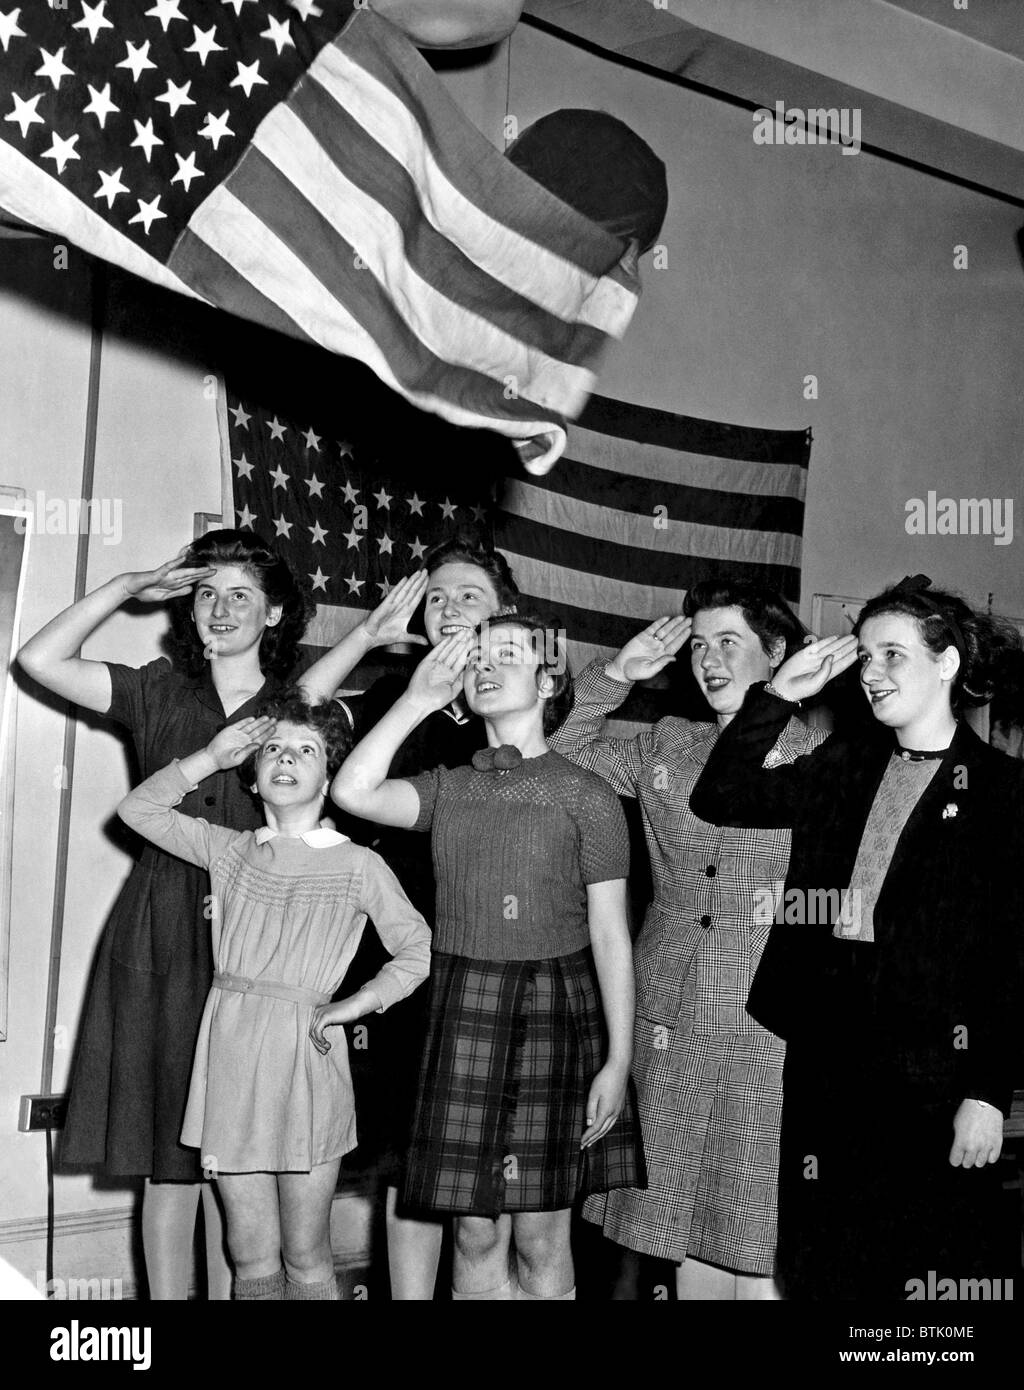 Les enfants réfugiés en saluant le drapeau américain. New York. ca. Décembre 1943. Avec la permission de : Archives CSU/Everett Collection Banque D'Images